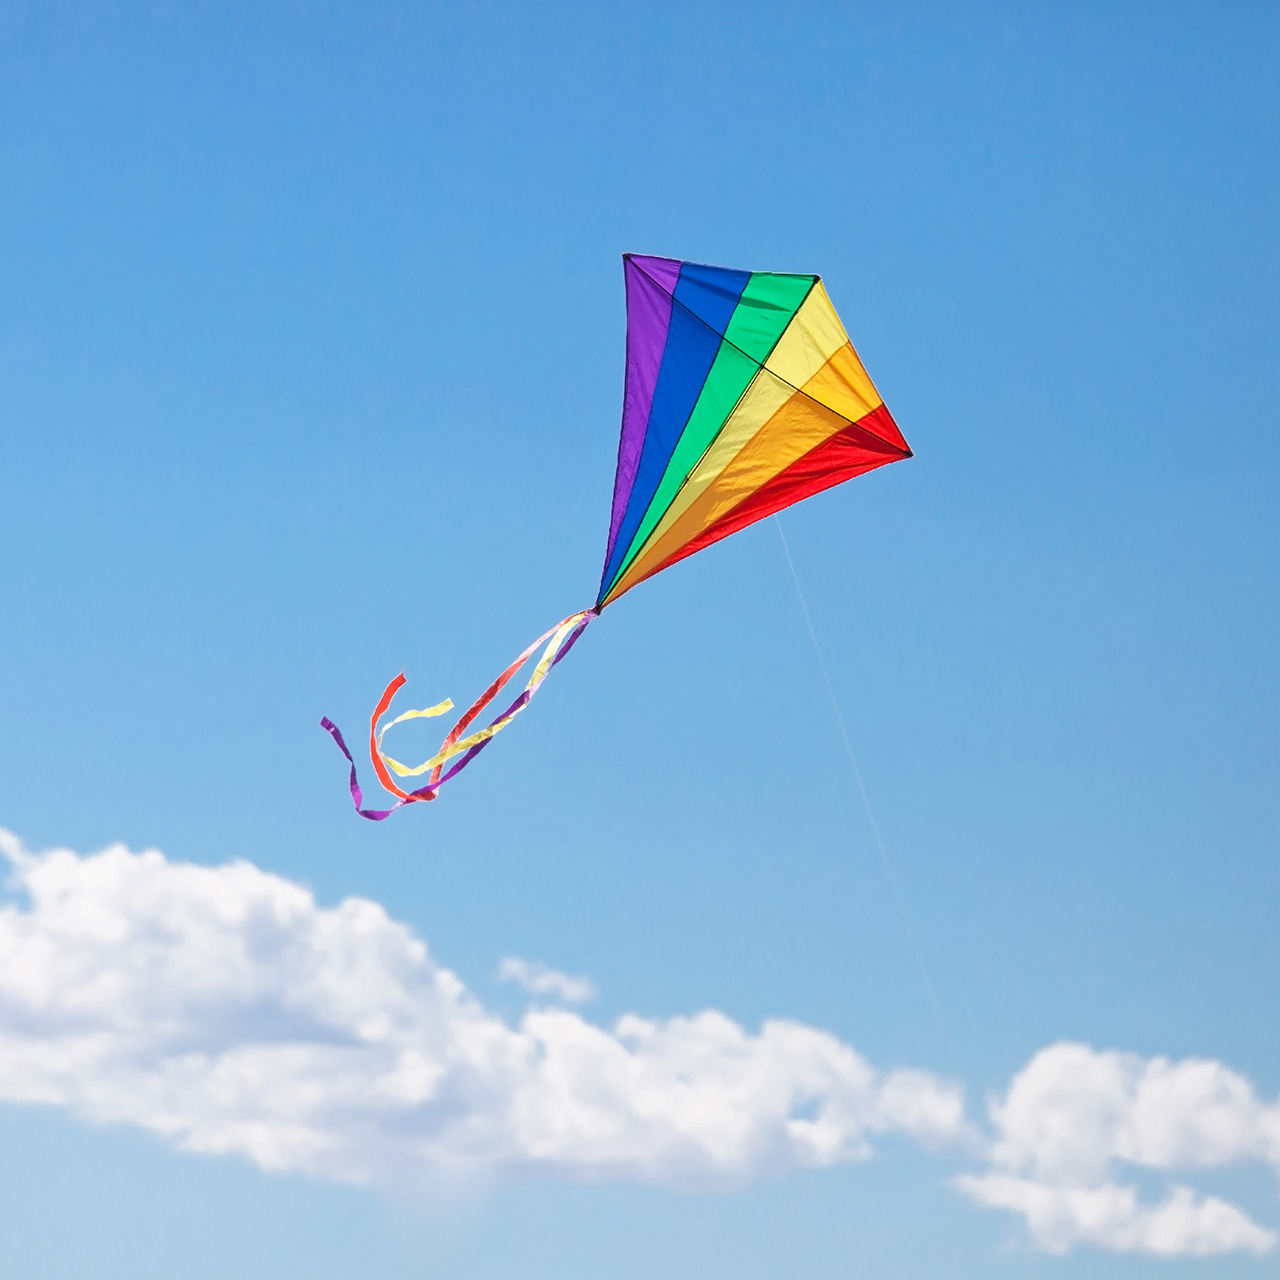 Make a kite